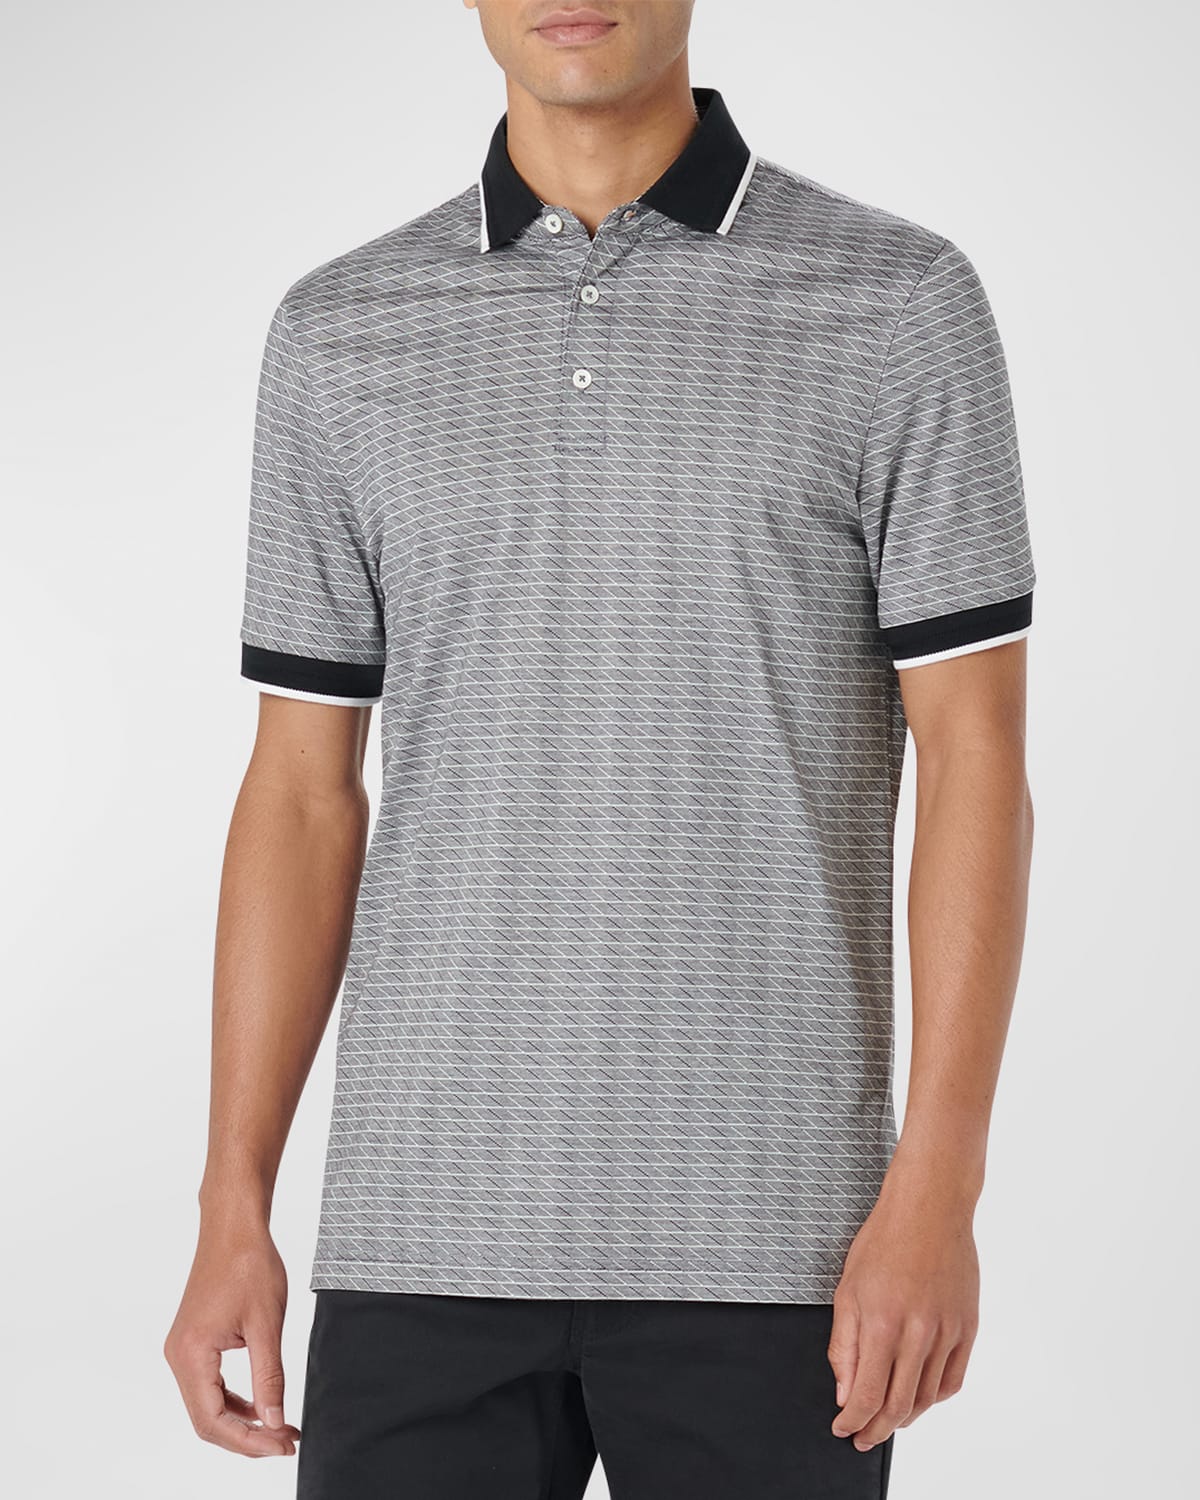 Men's Printed Cotton Polo Shirt